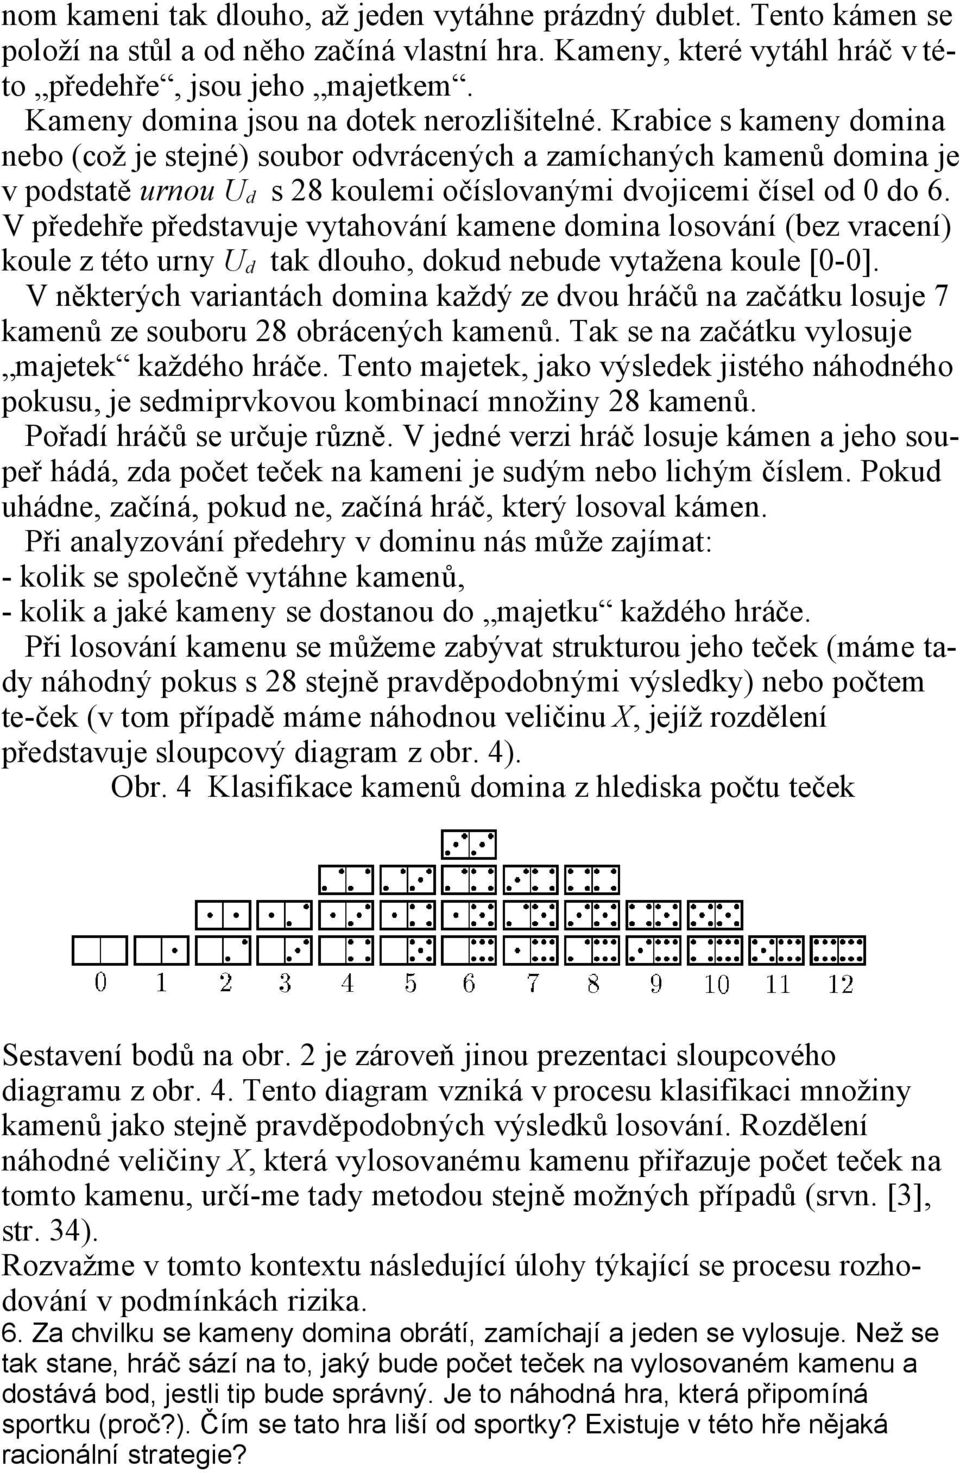 Krabice s kameny domina nebo (což je stejné) soubor odvrácených a zamíchaných kamenů domina je v podstatě urnou U d s 28 koulemi očíslovanými dvojicemi čísel od 0 do 6.